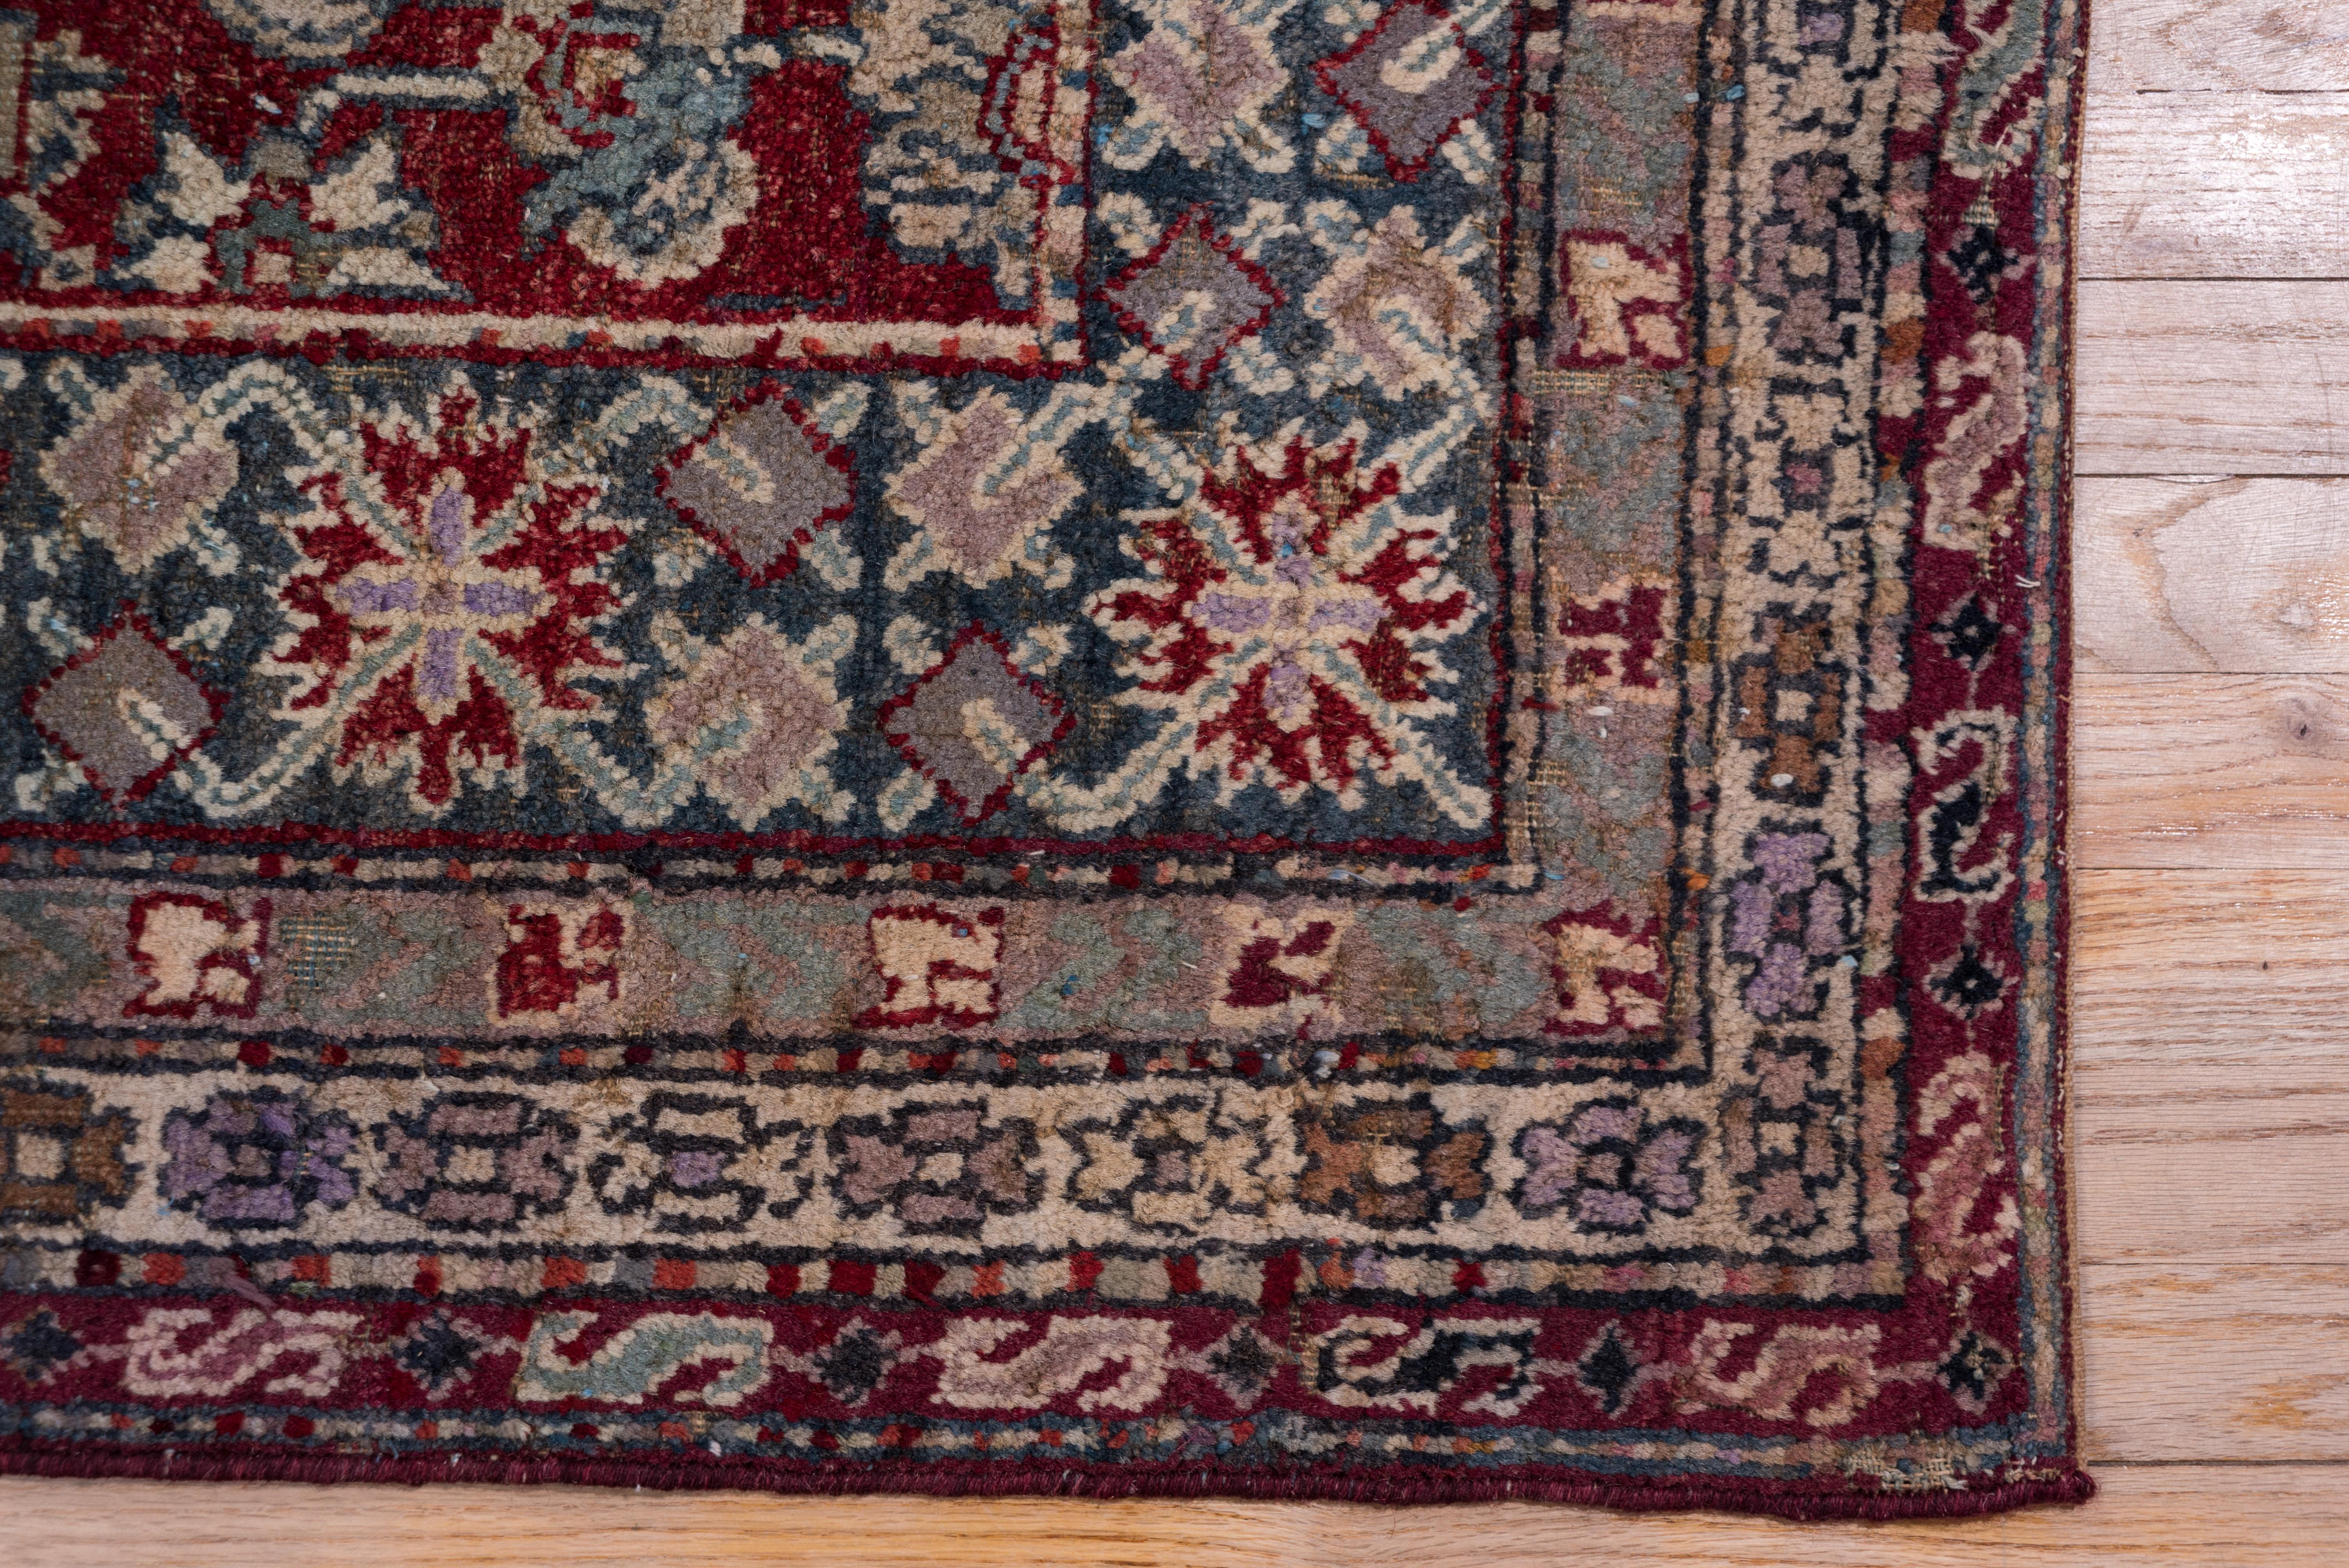 Wool Indian Agra Carpet, Burgundy Field